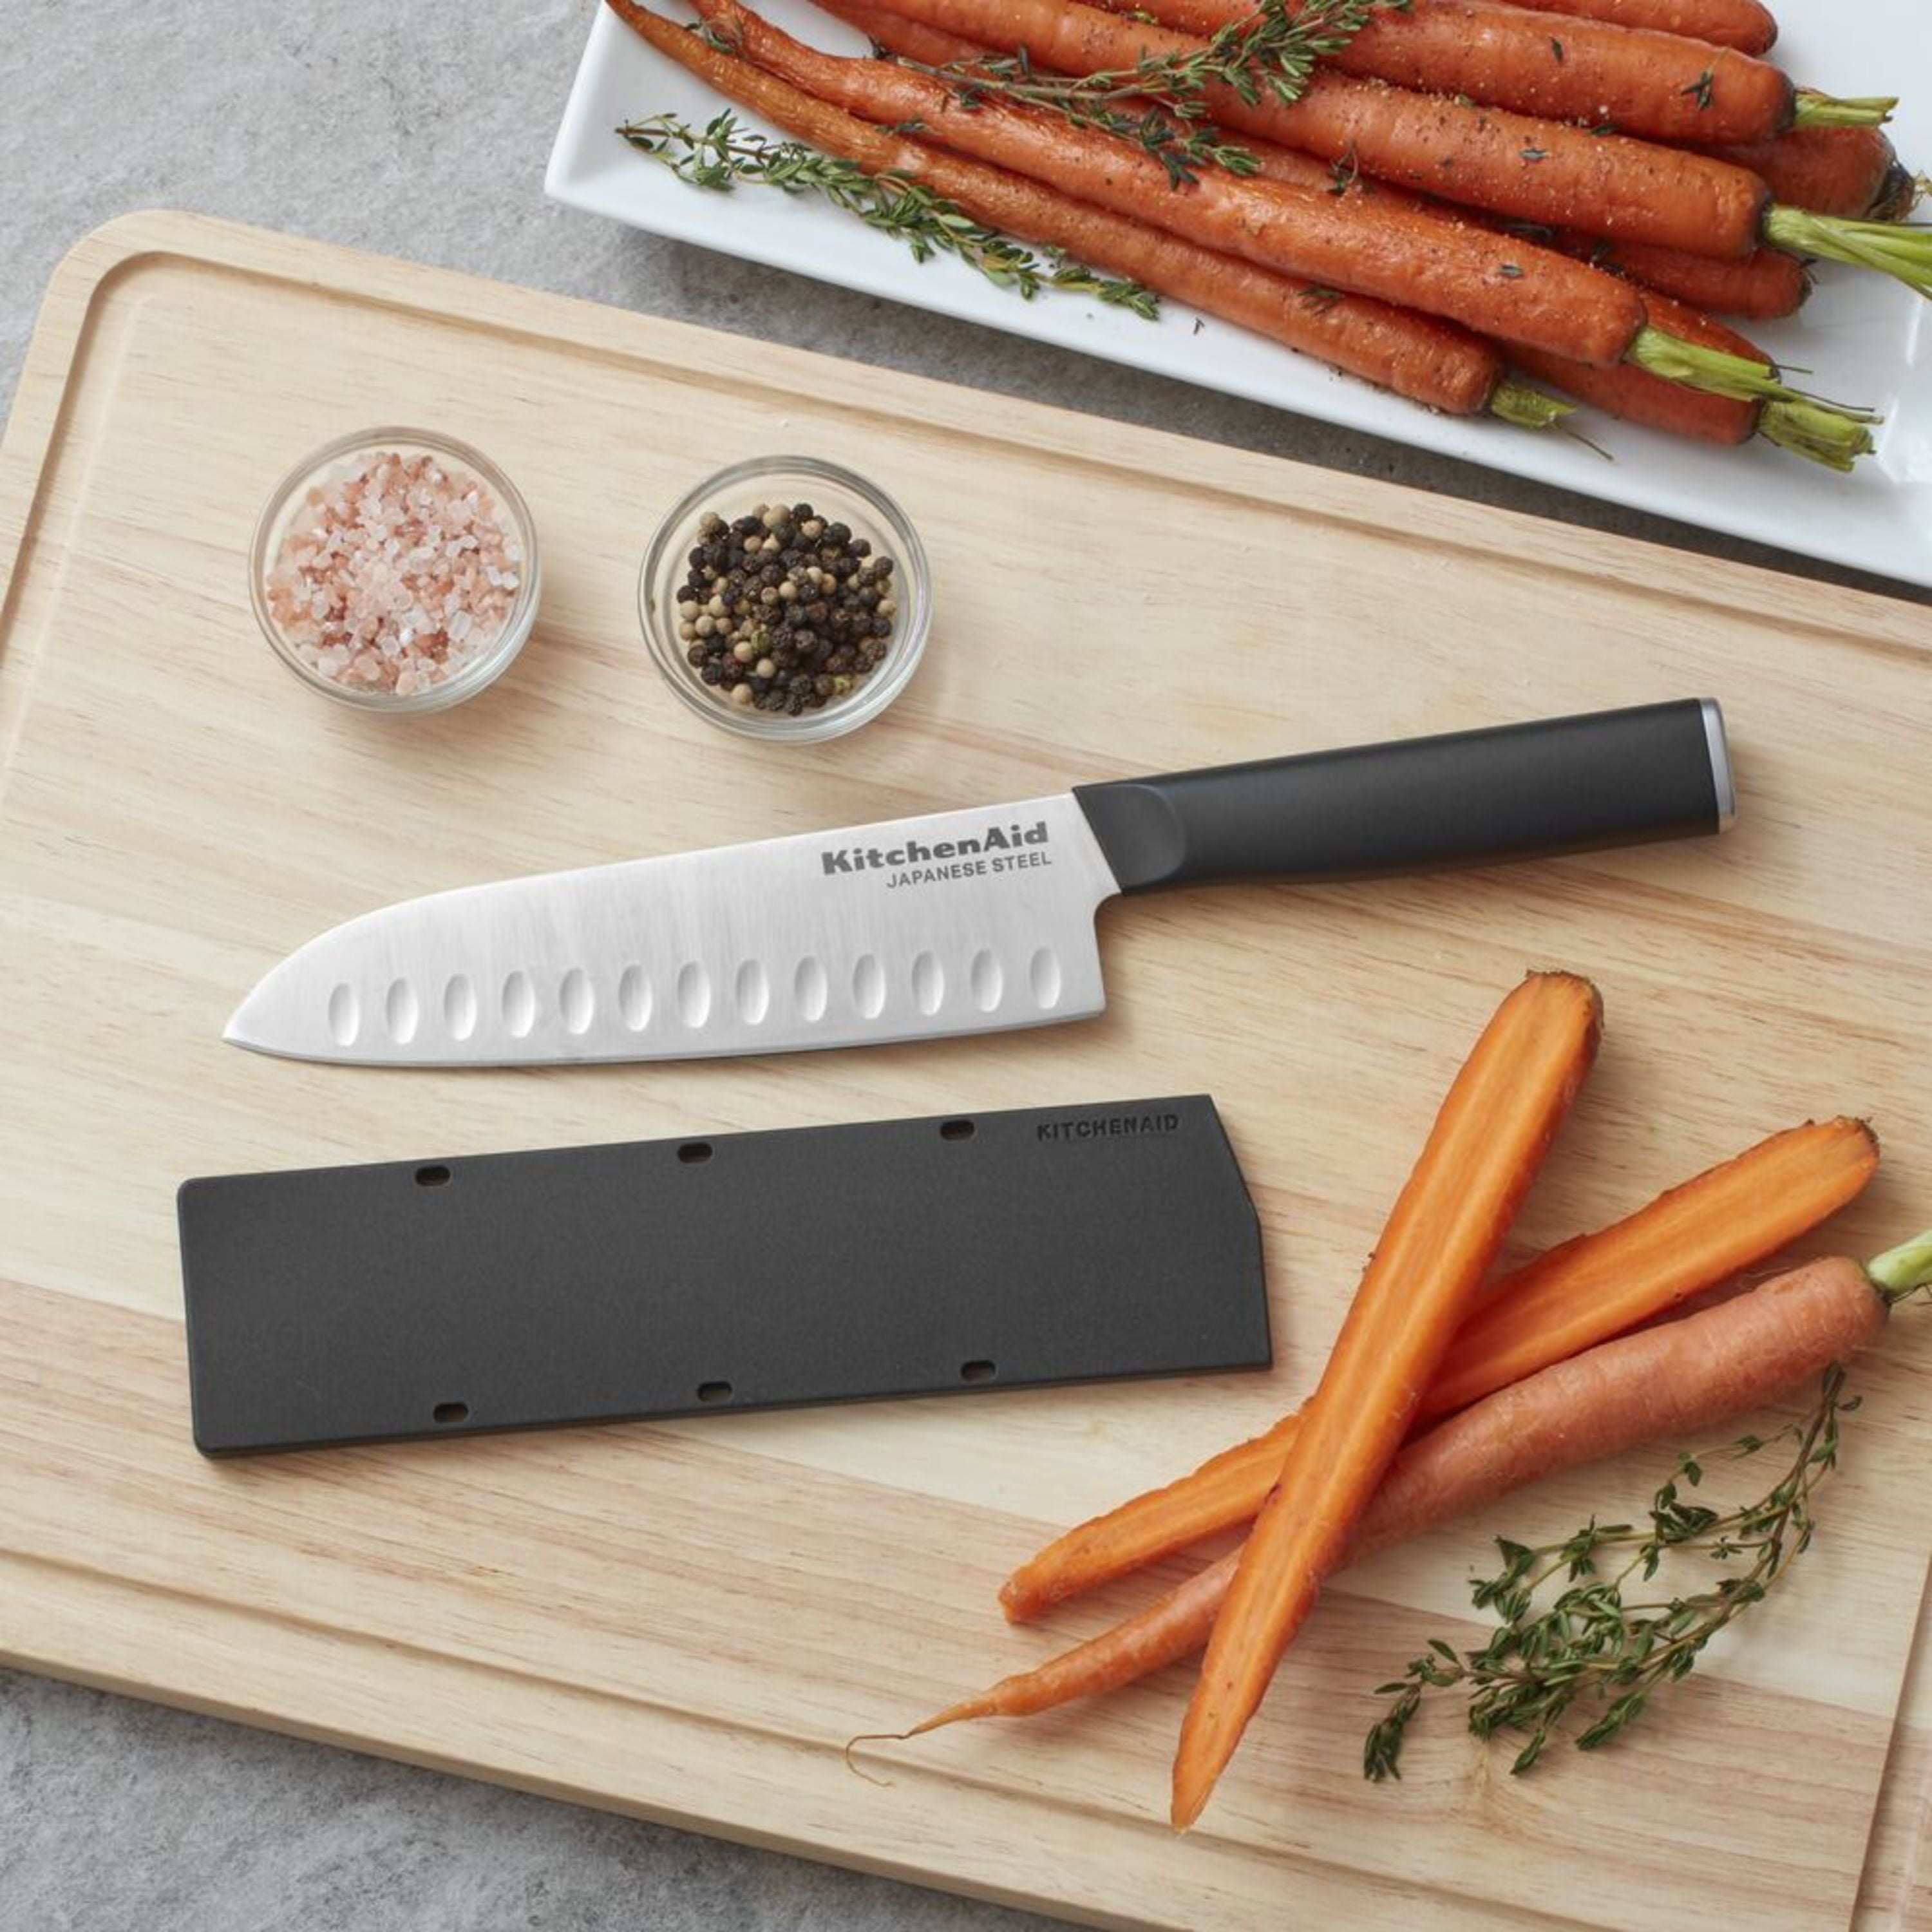 KitchenAid Classic 6 Chef Knife with Sheath - 20864617